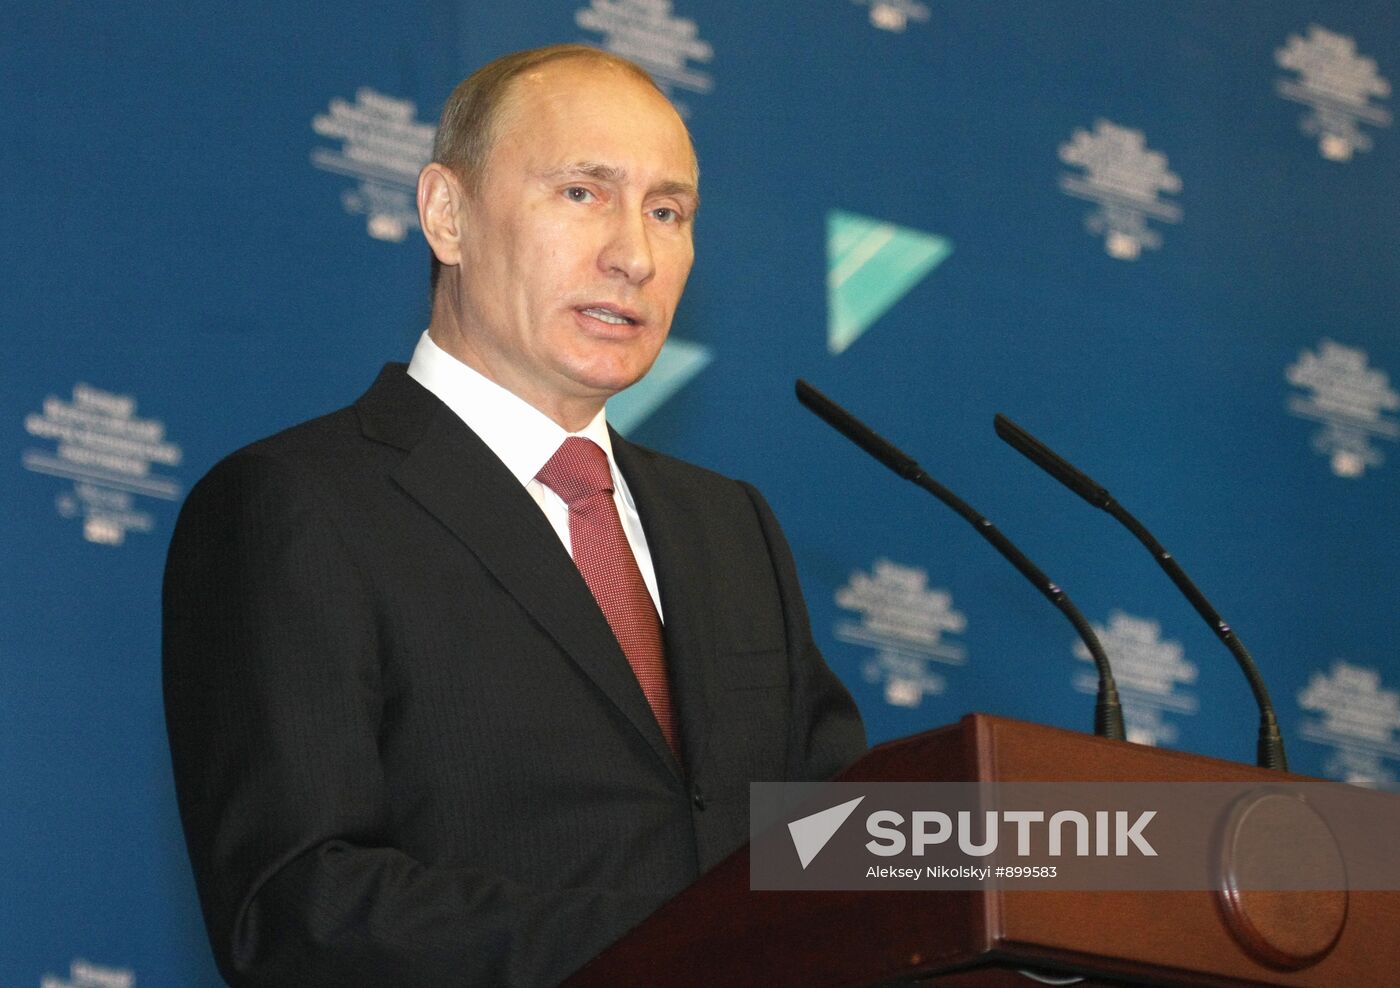 Vladimir Putin attends healthcare workers forum